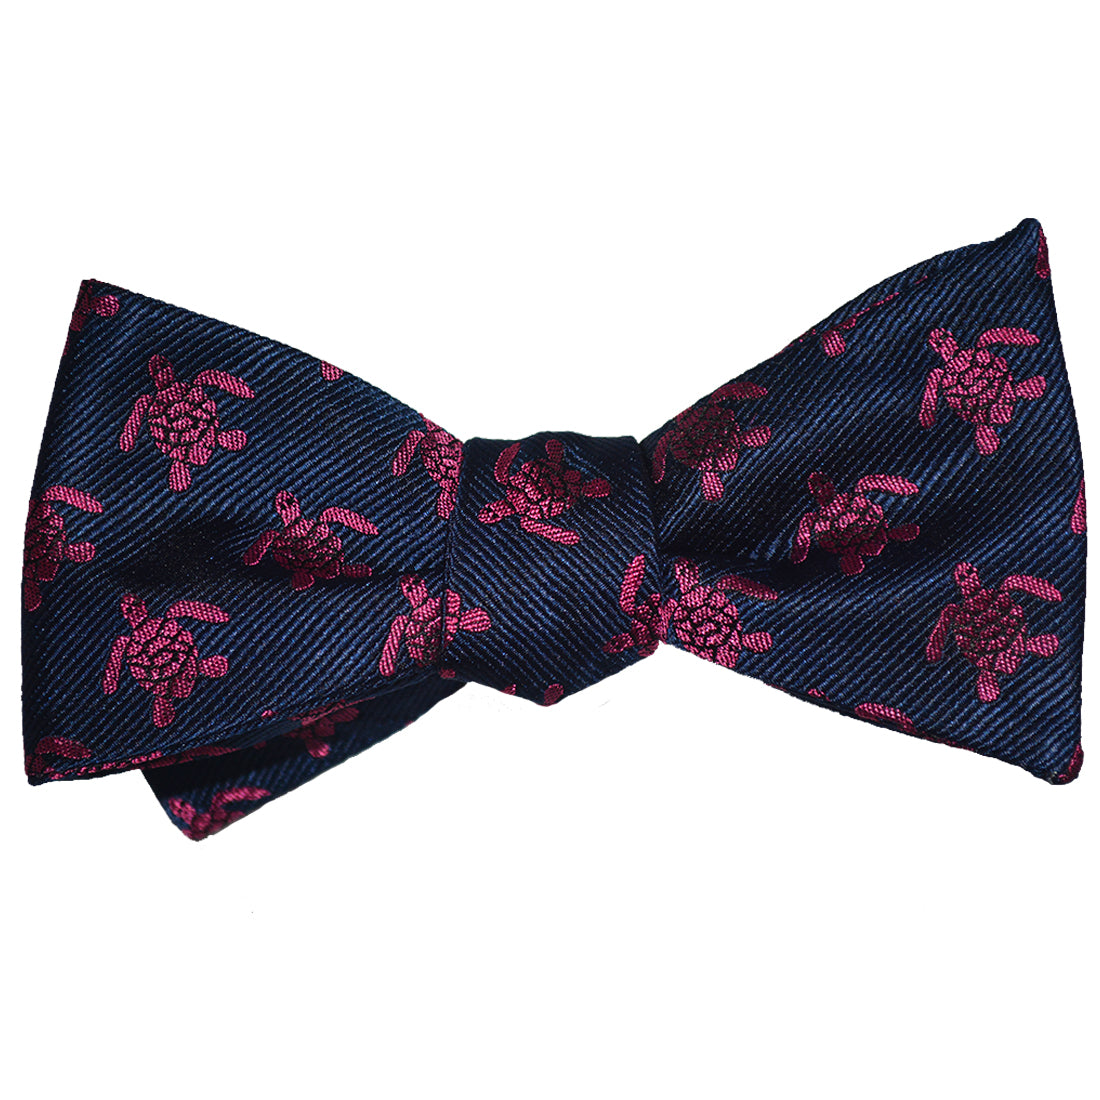 Turtle Bow Tie - Pink on Navy, Woven Silk - SummerTies